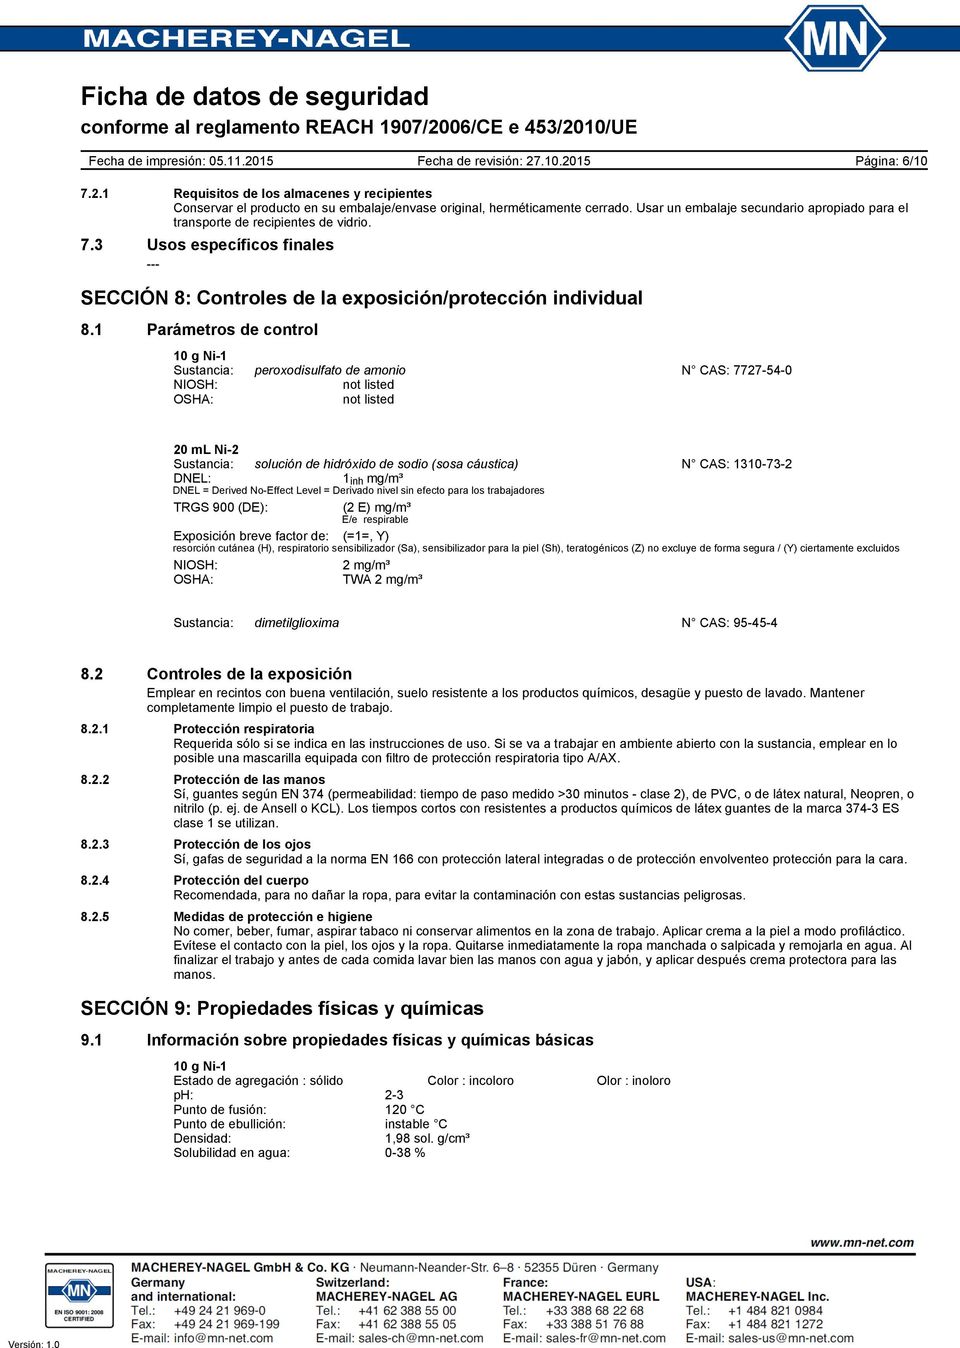 1 Parámetros de control Sustancia: peroxodisulfato de amonio N CAS: 7727-54-0 NIOSH: not listed OSHA: not listed Sustancia: solución de hidróxido de sodio (sosa cáustica) N CAS: 1310-73-2 DNEL: 1 inh